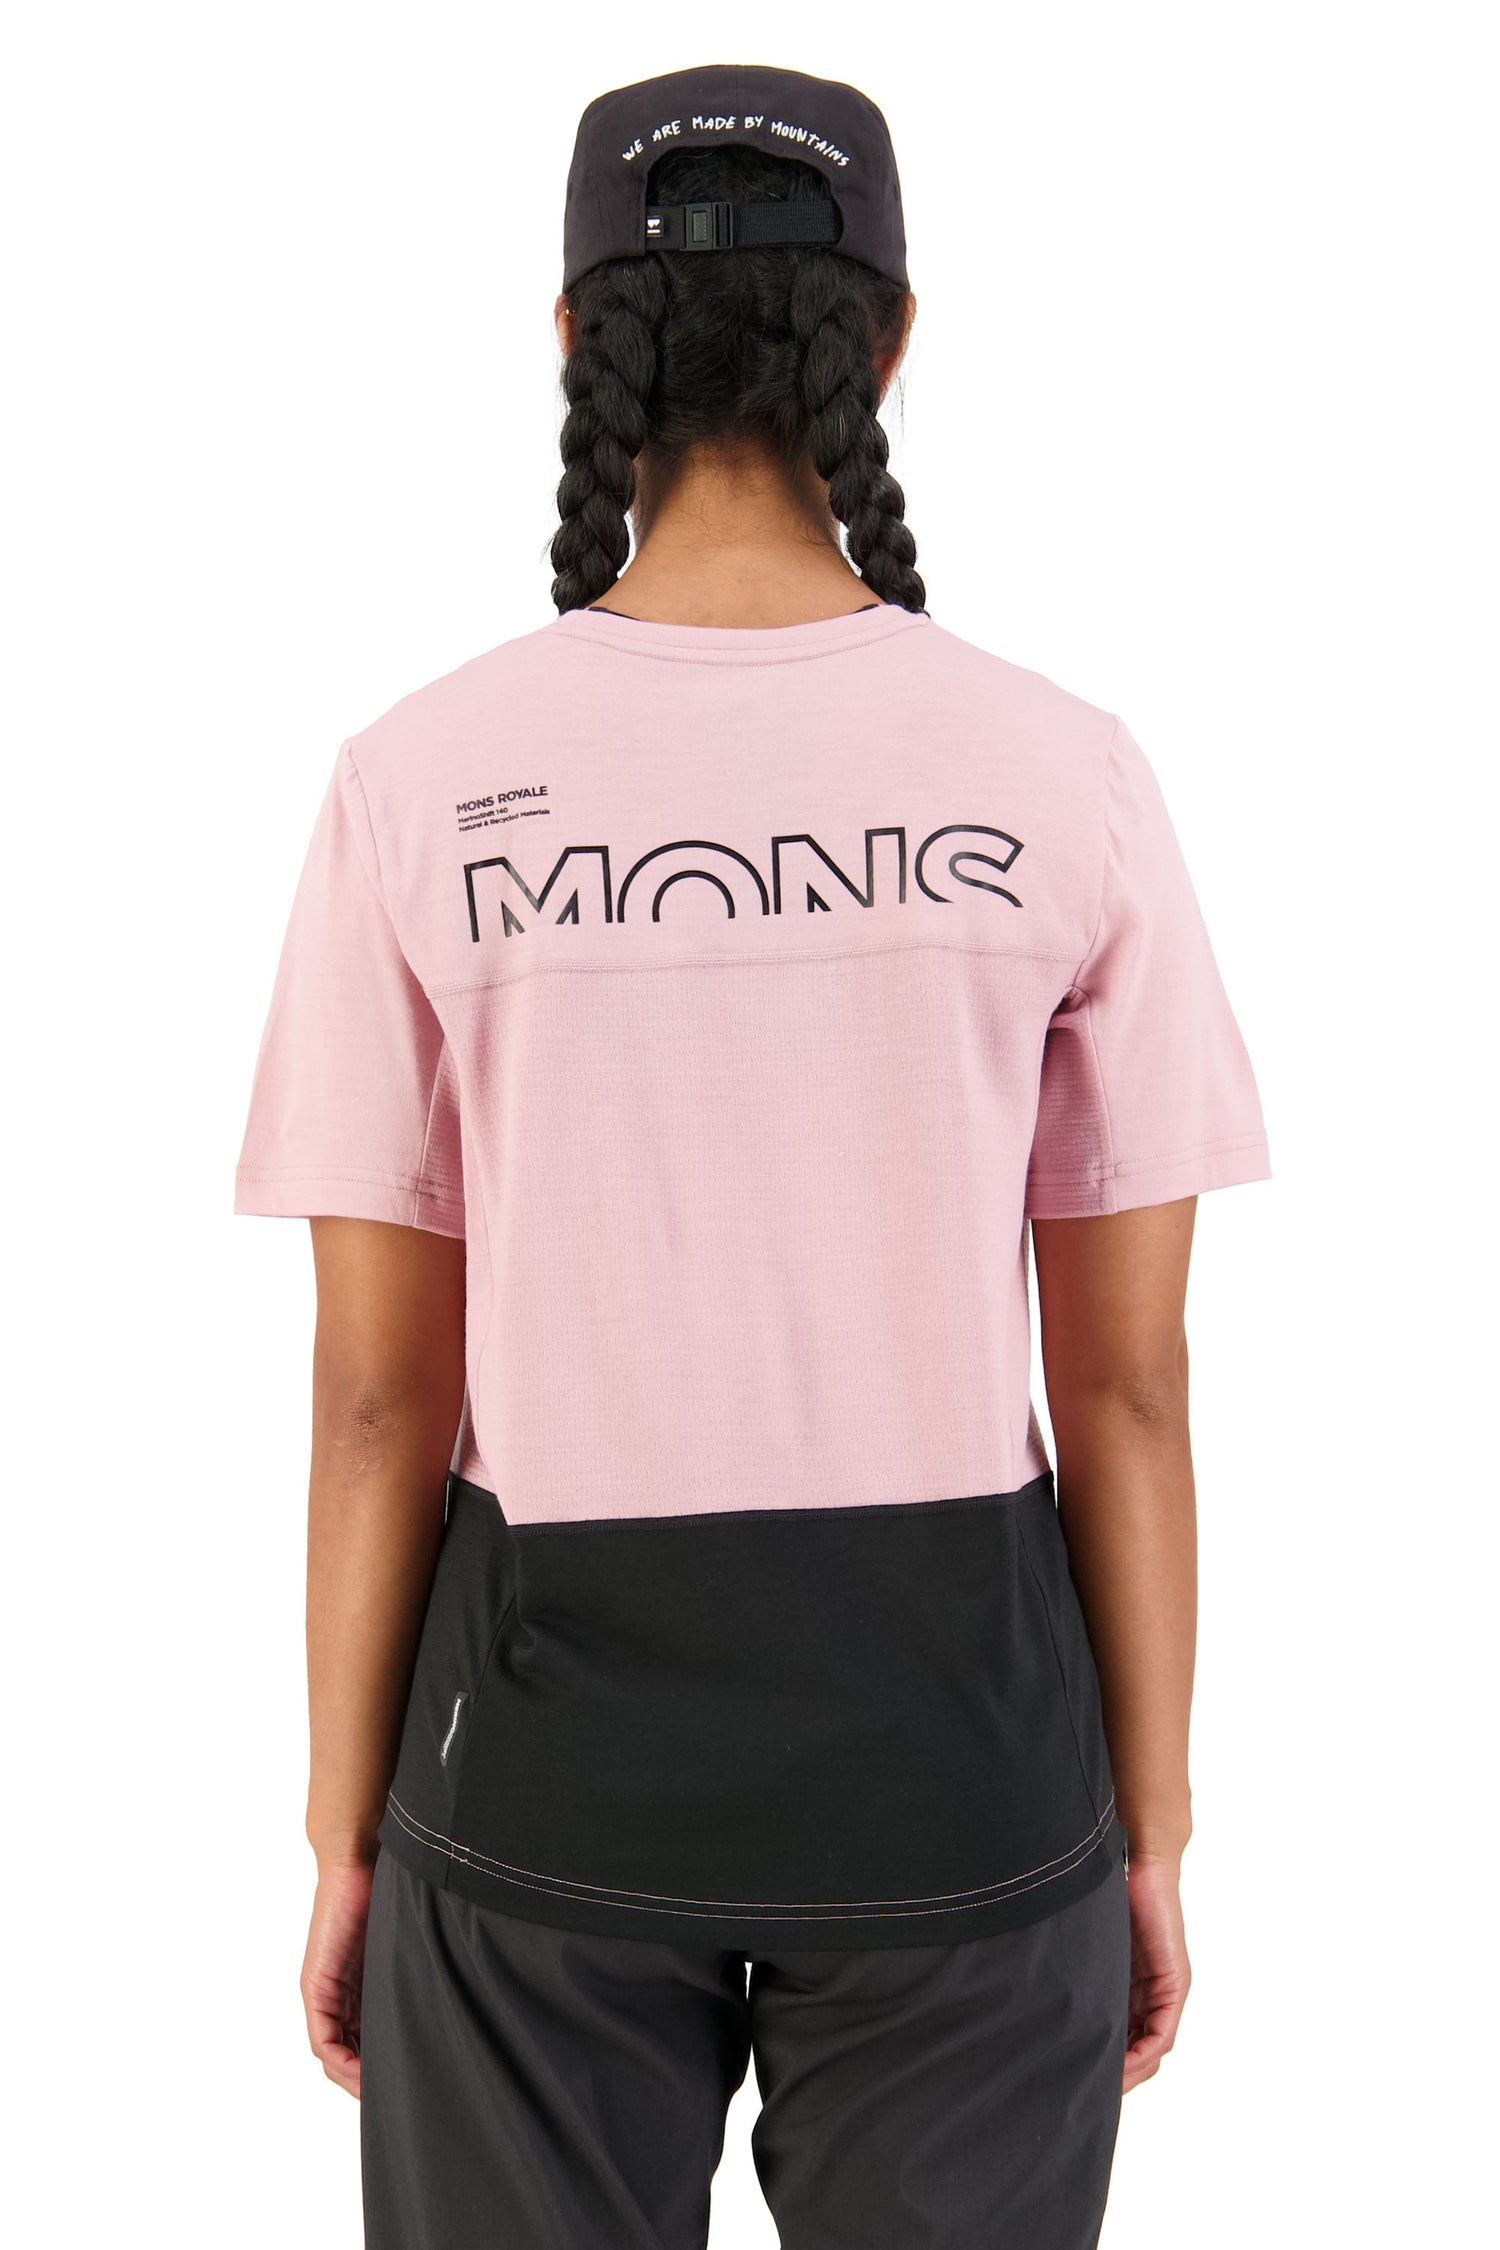 Mons Royale W's Tarn Merino Shift Tee - Merino Wool Black Candy Shirt